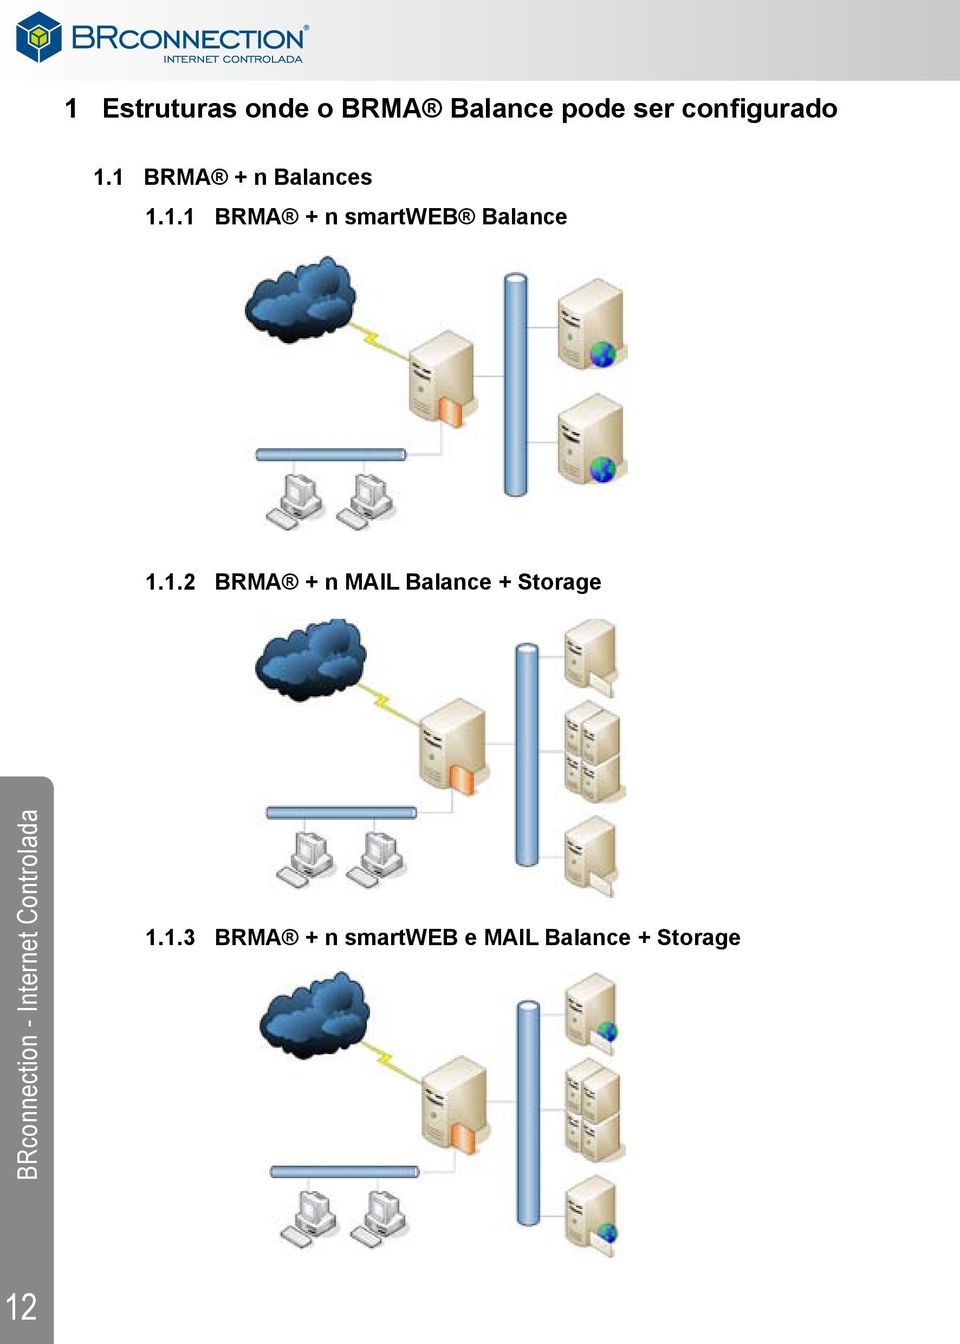 BRMA + n MAIL Balance + Storage BRconnection - Internet